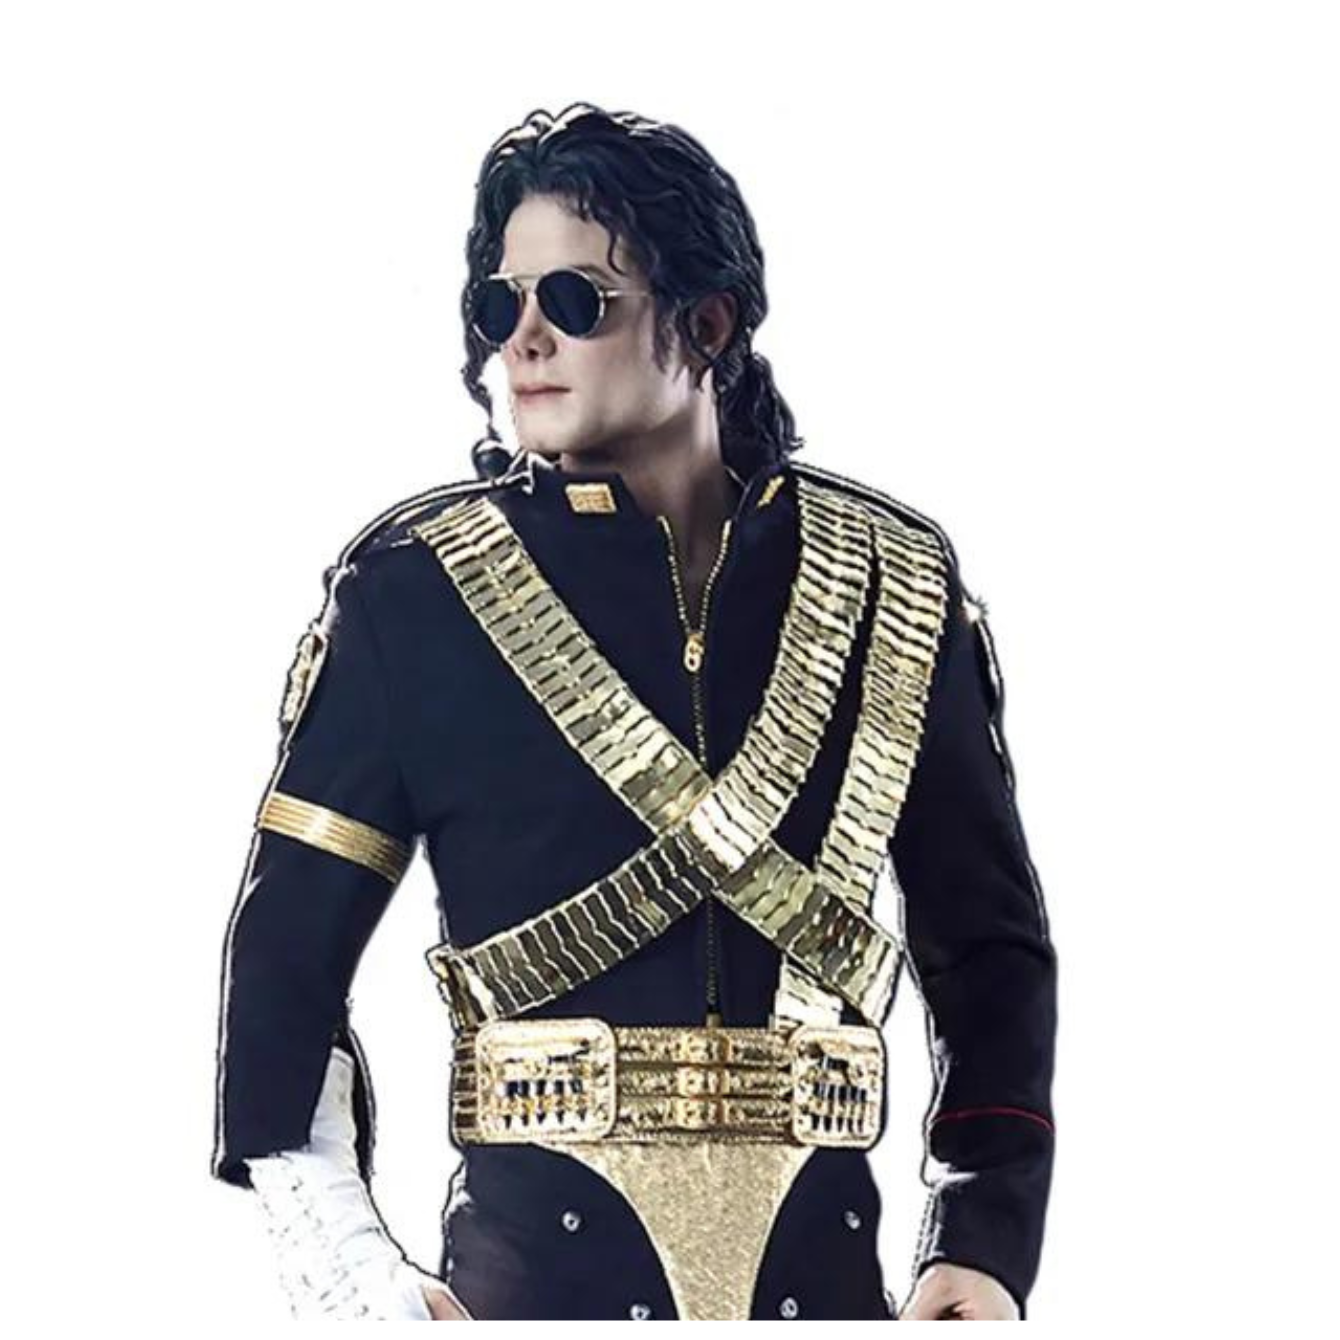 PRE-ORDER Michael Jackson "Michael Jackson", Blitzway 1/4 Superb Scale Statue